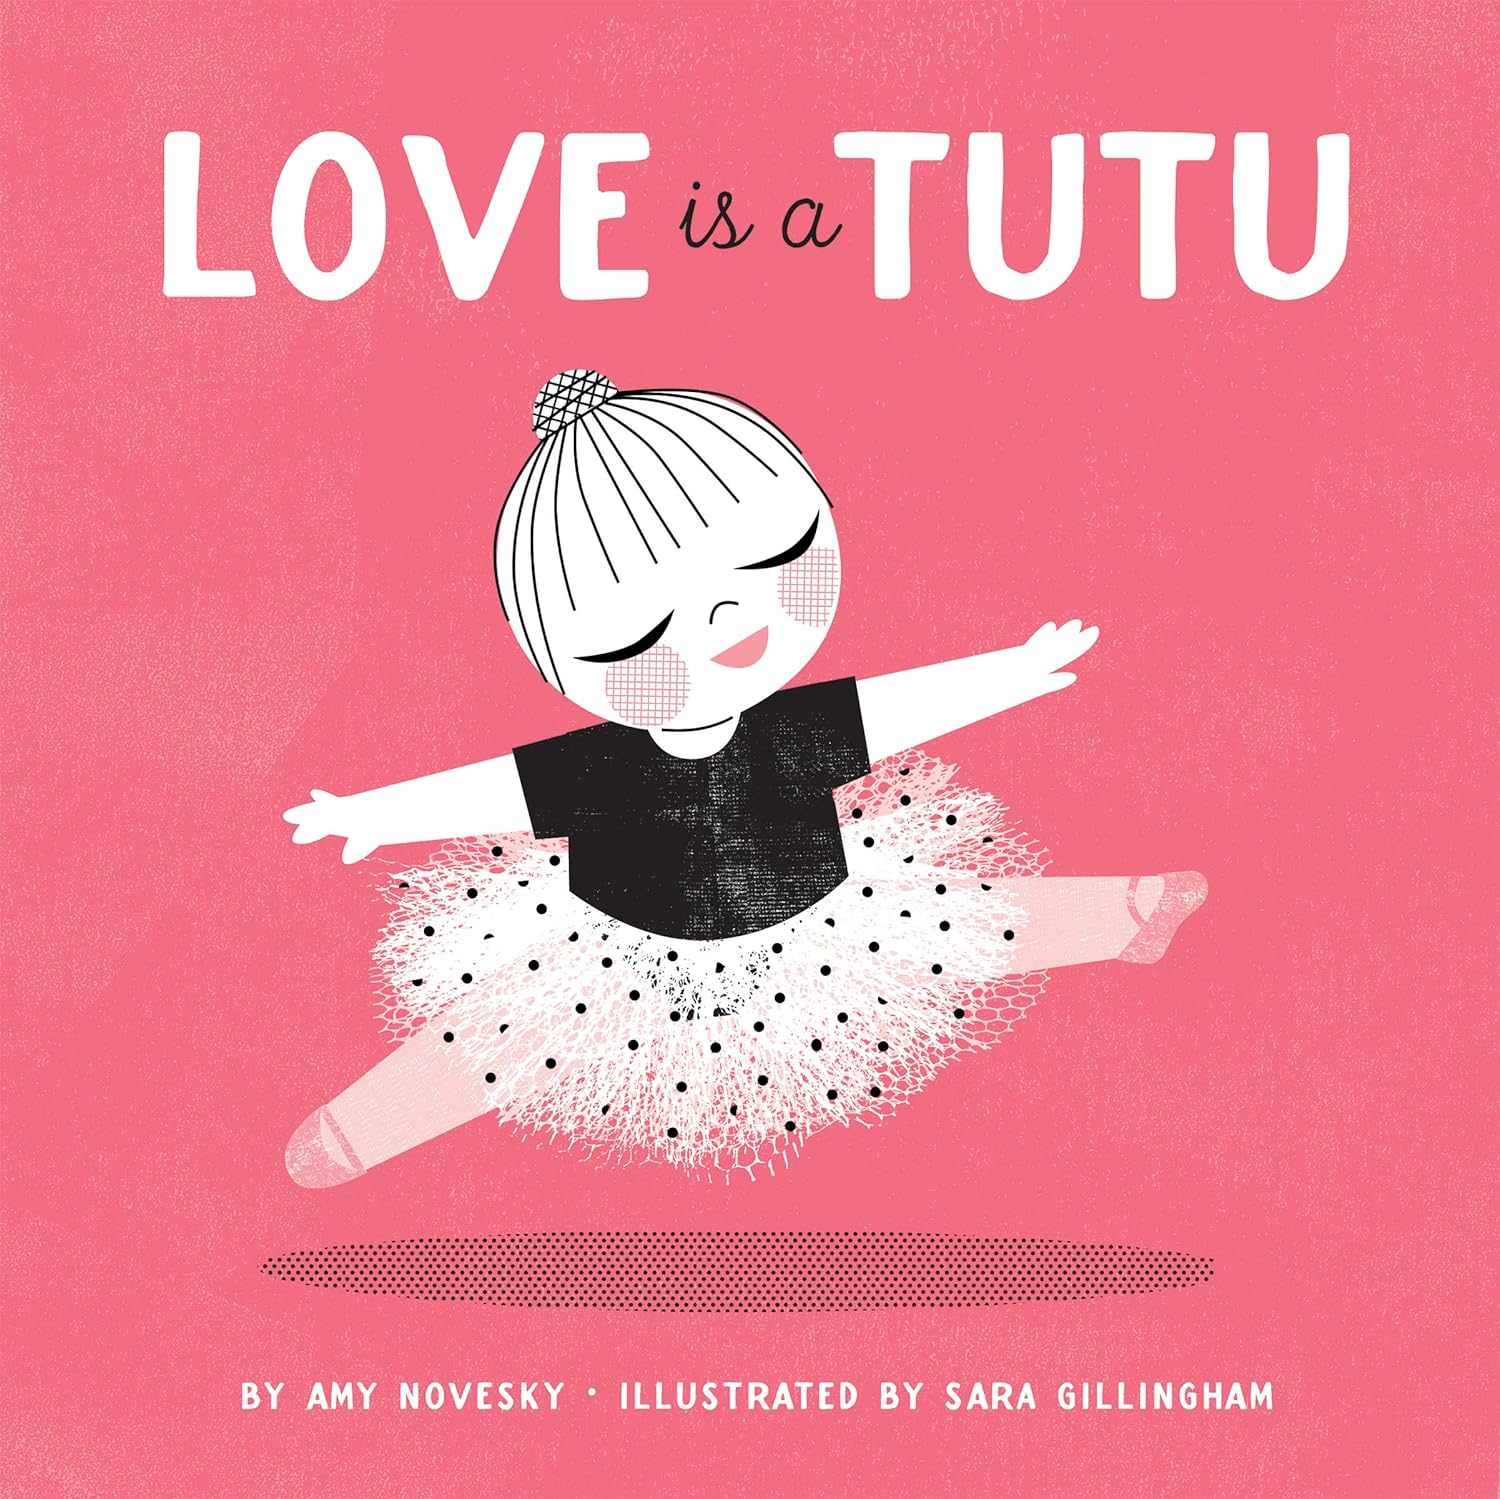 Love is a Tutu